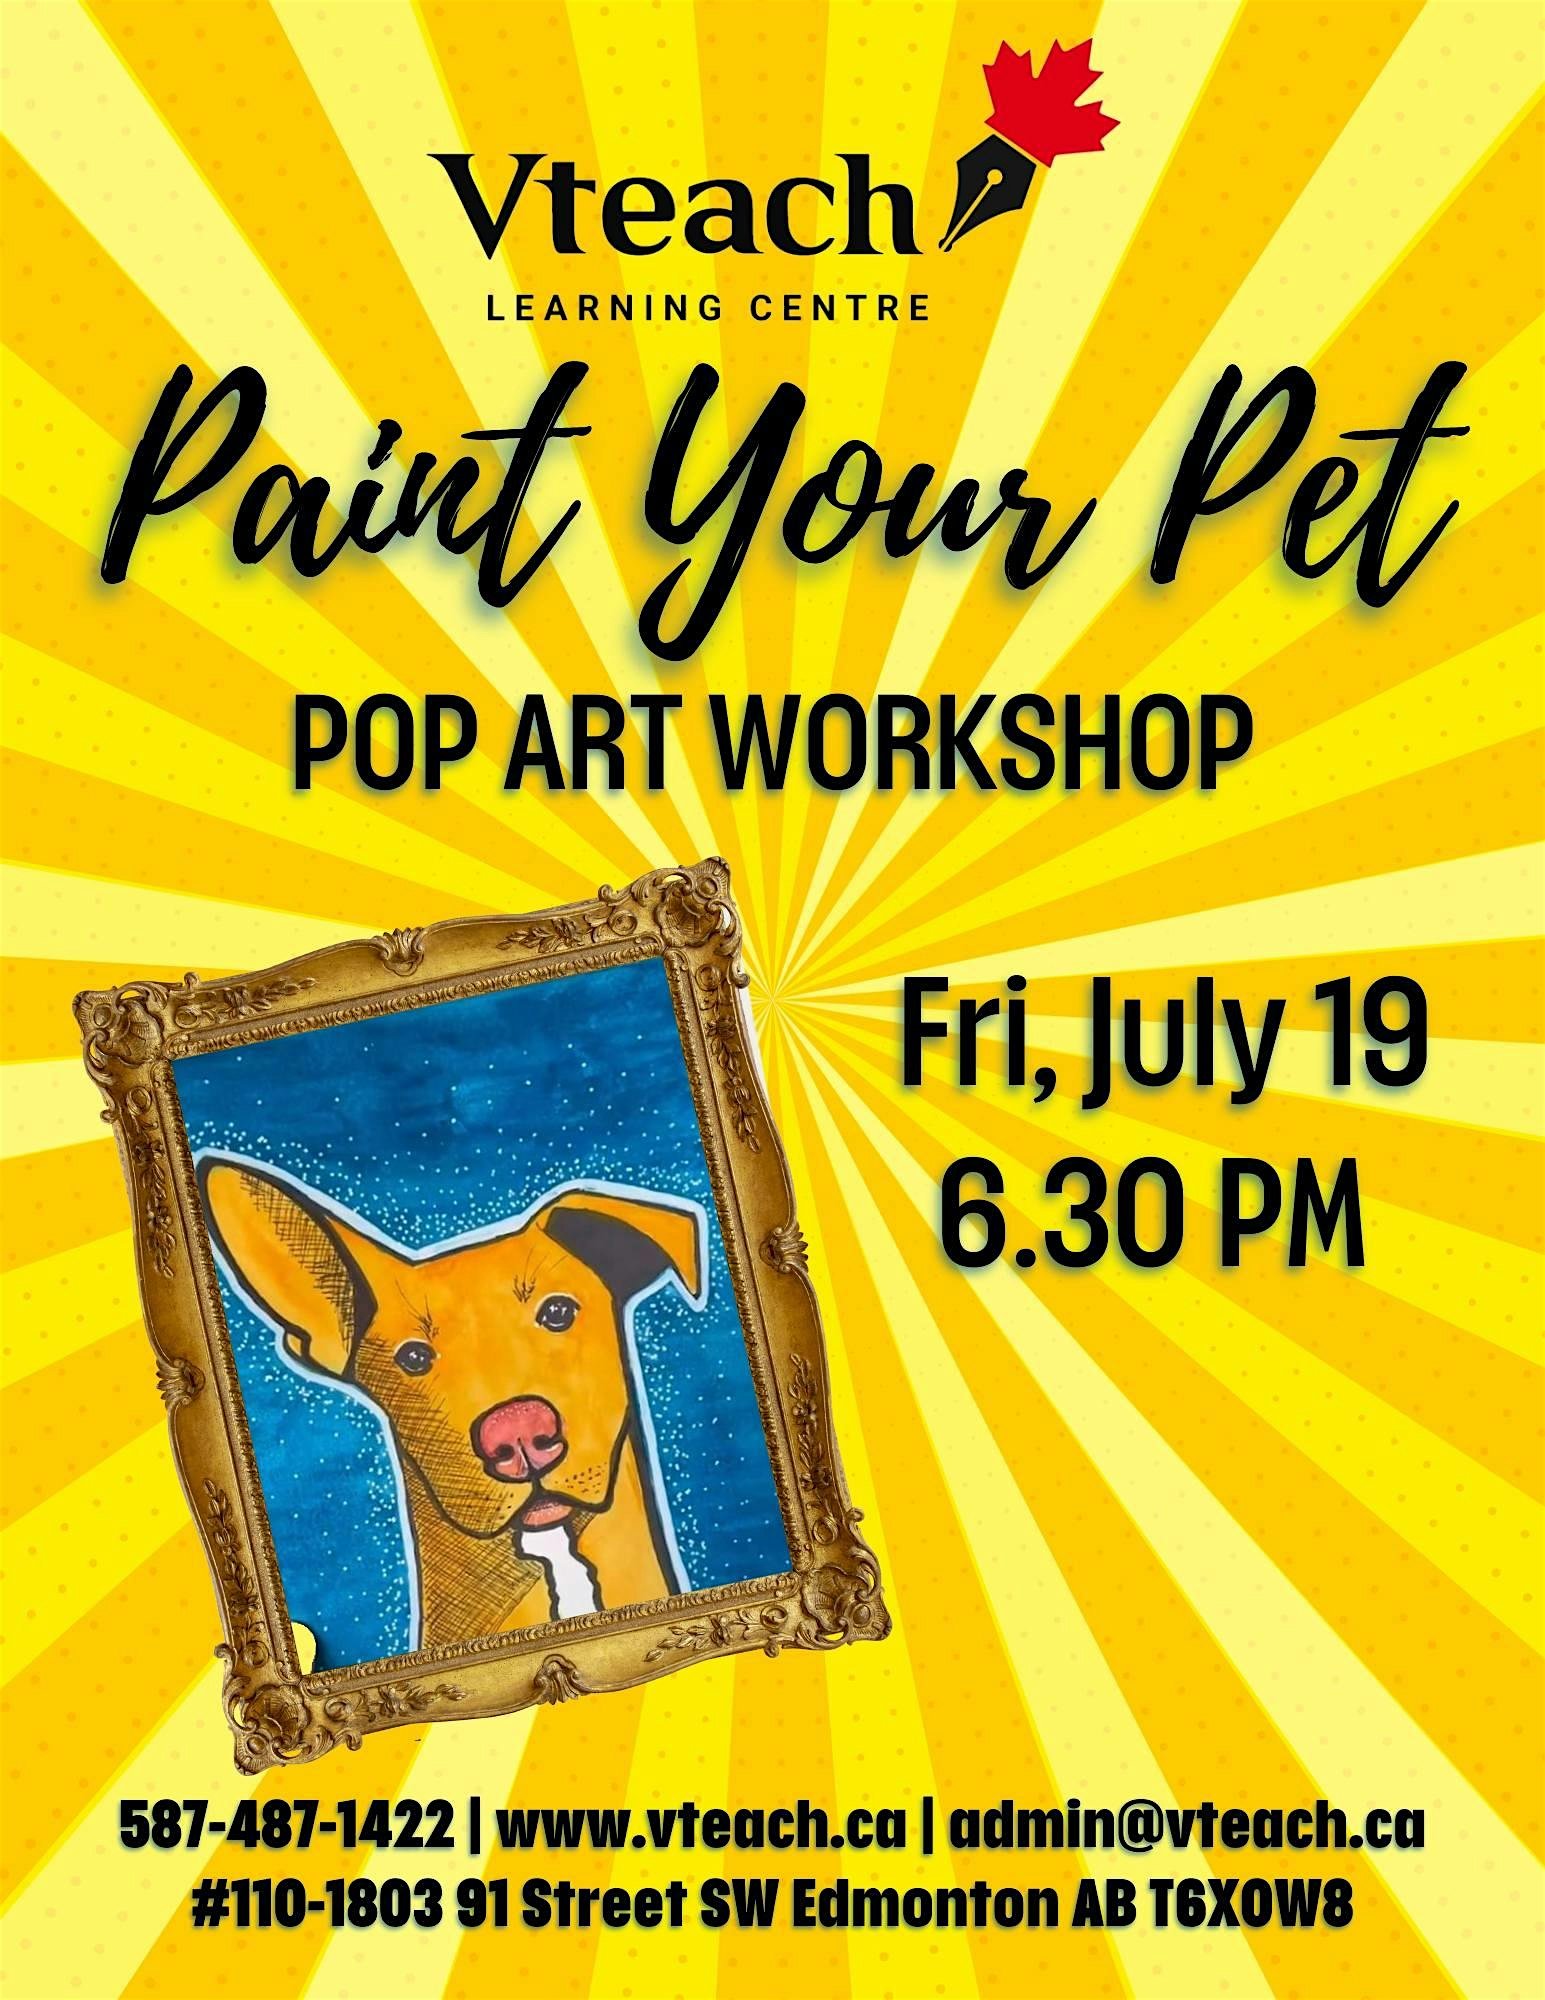 Paint Your Pet POP ART WORKSHOP